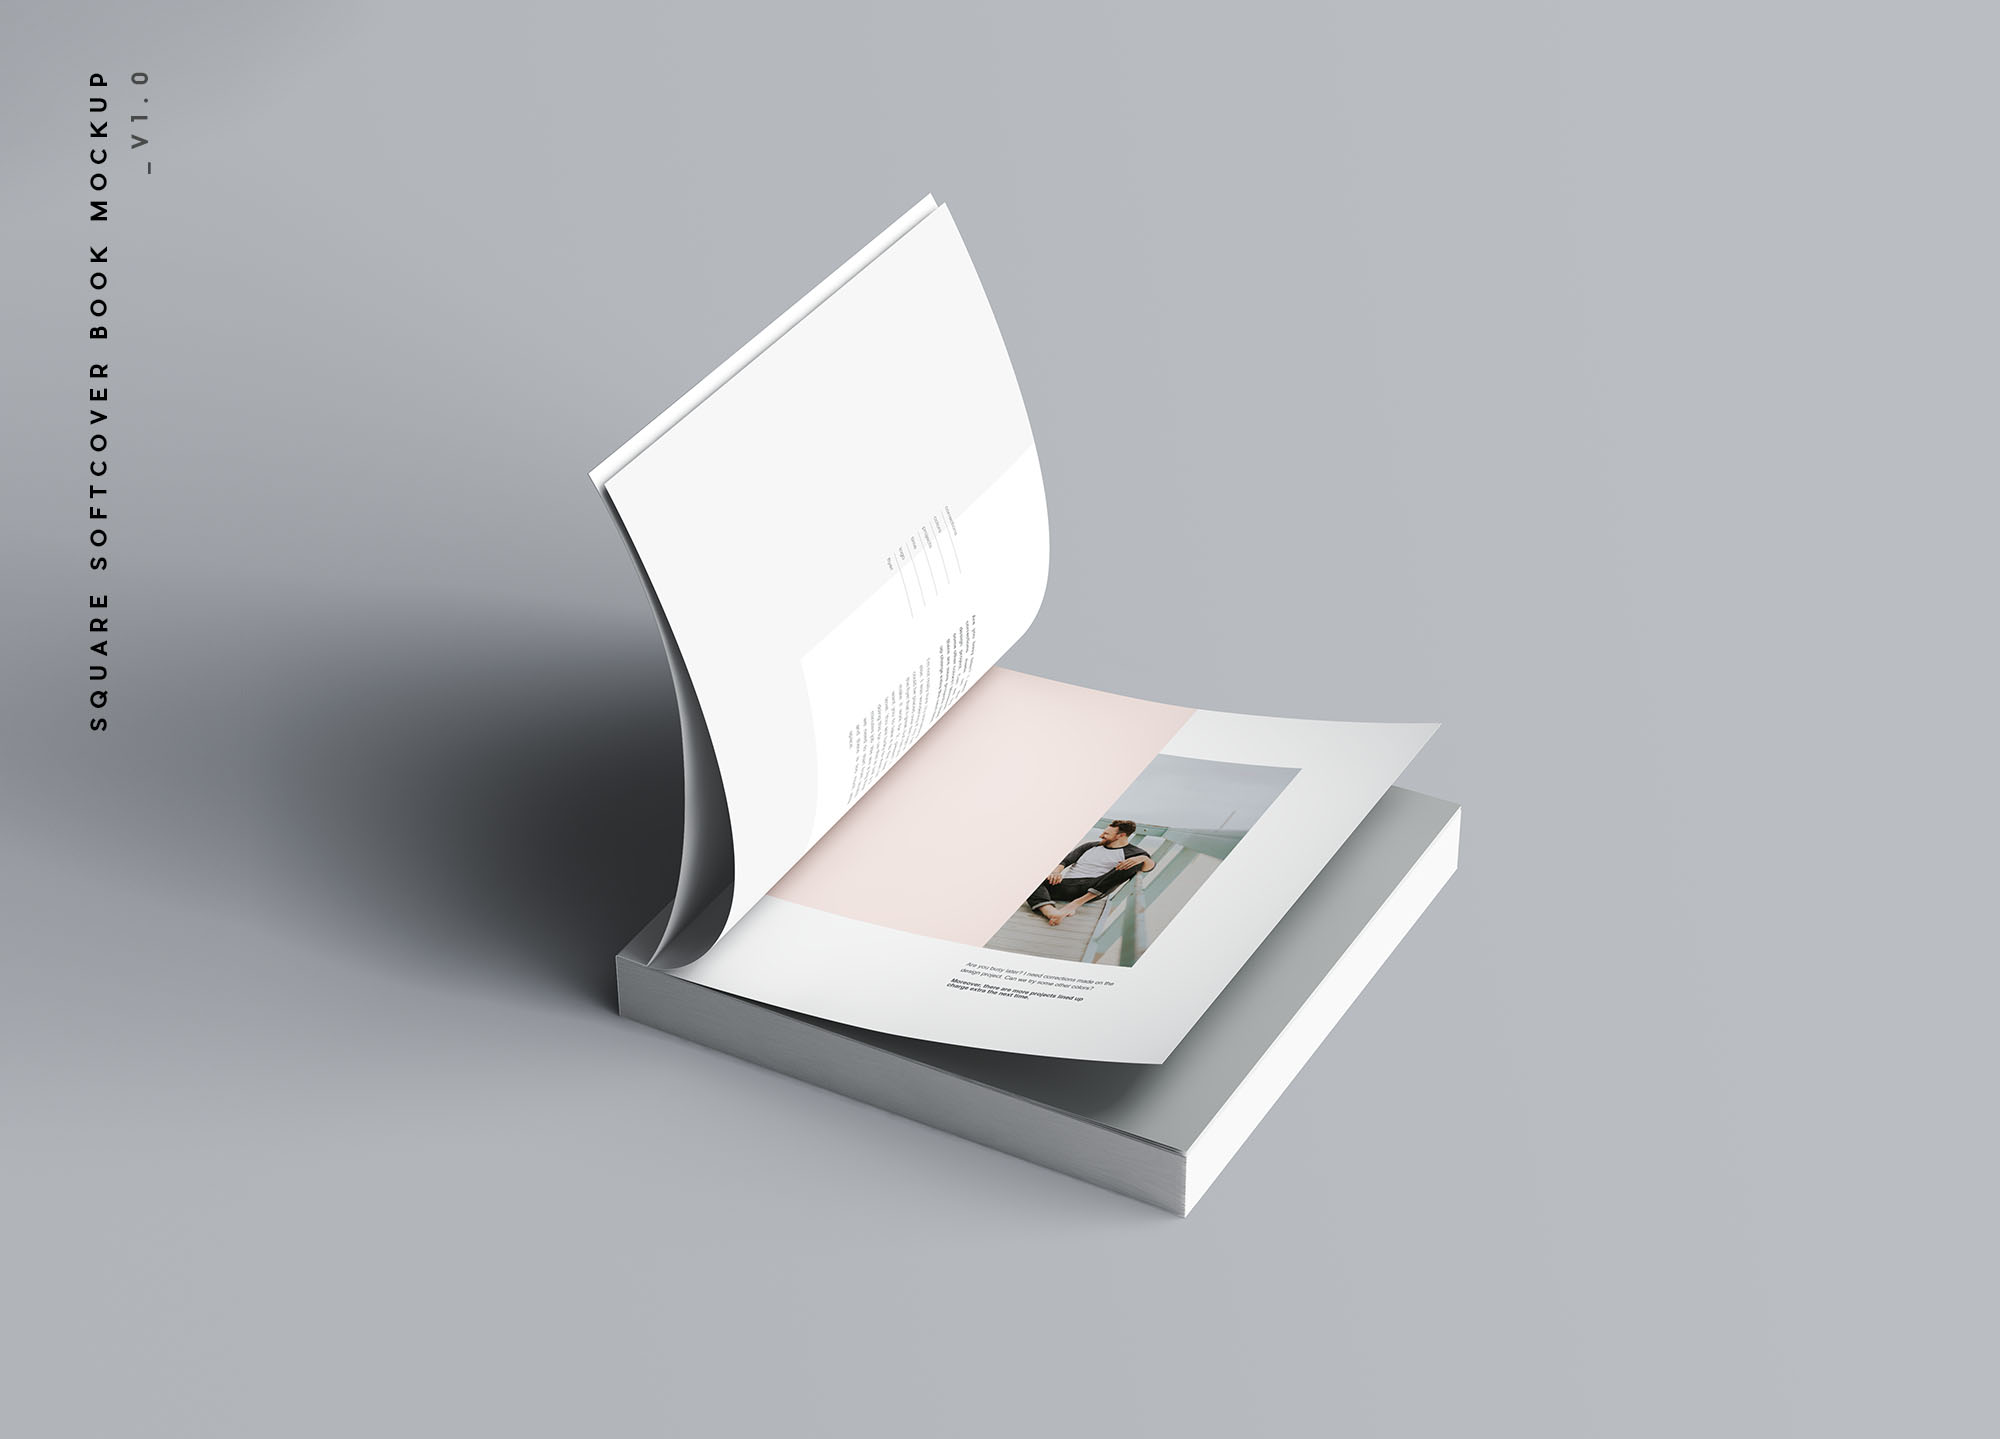 方形软封图书内页版式设计效果图样机素材库精选 Square Softcover Book Mockup插图